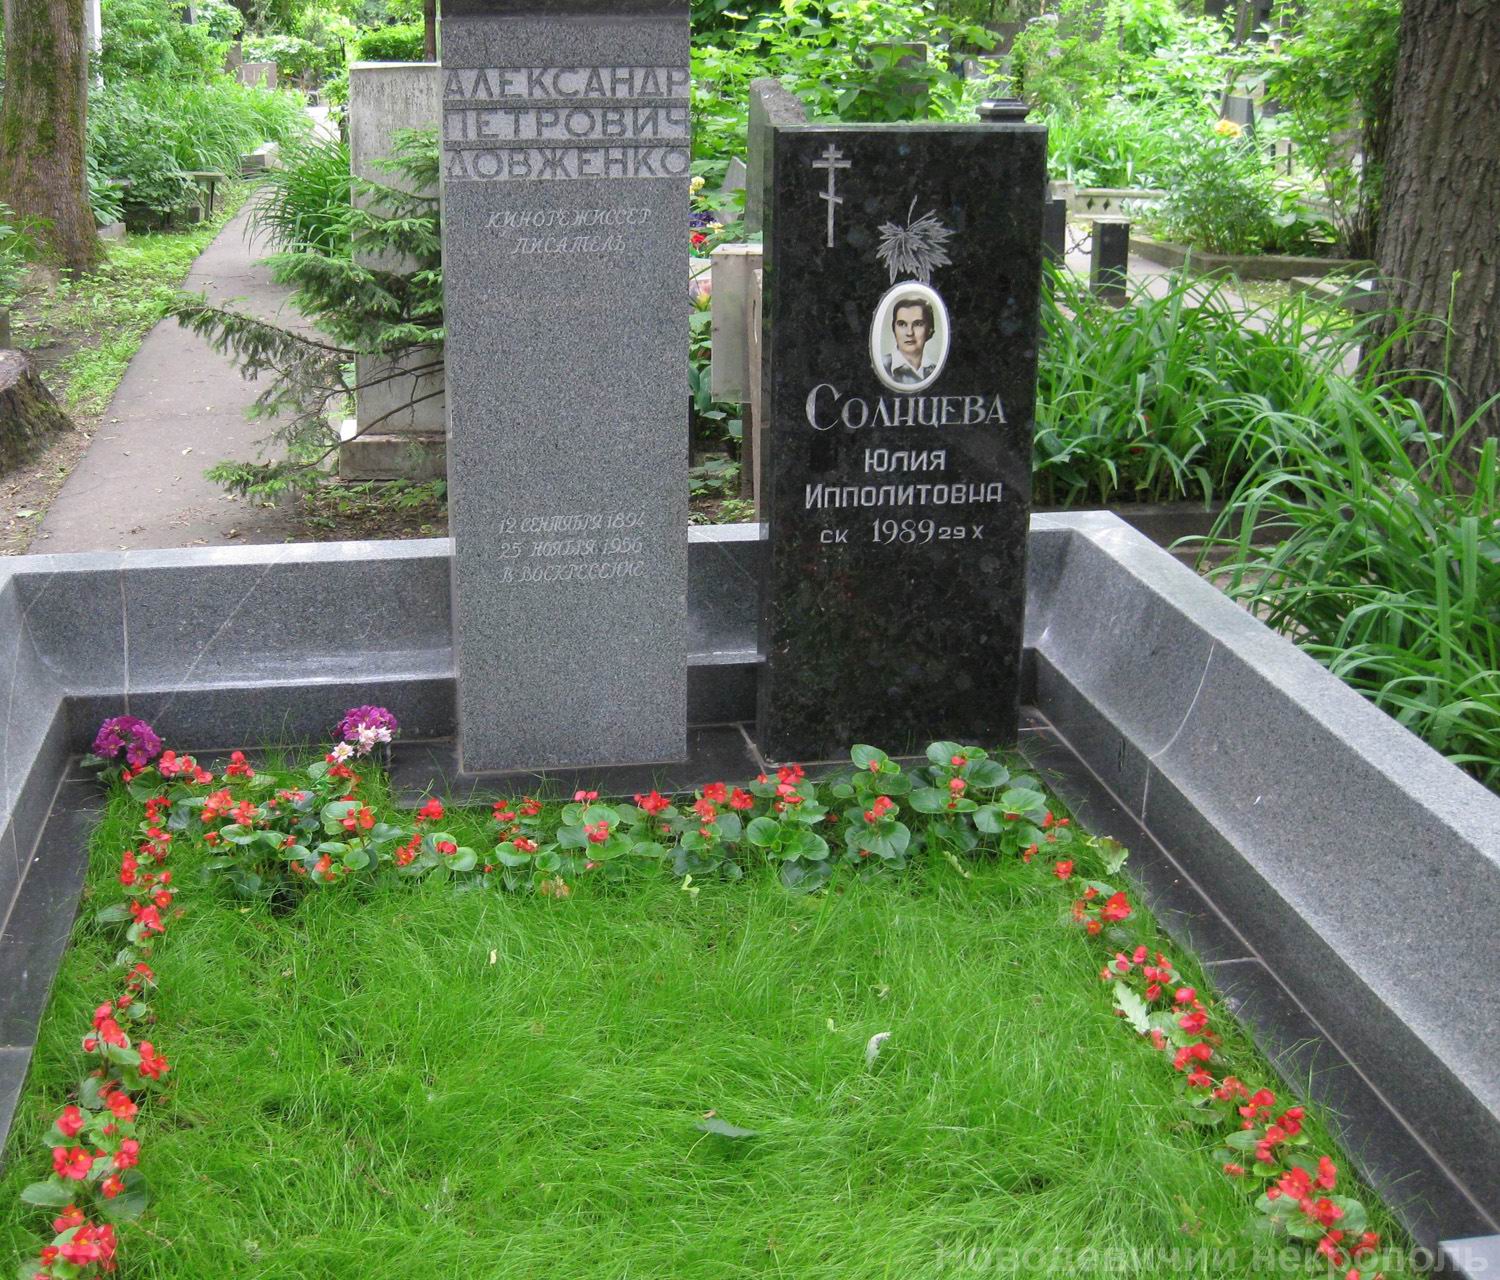 Памятник на могиле Солнцевой Ю.И. (1901-1989), на Новодевичьем кладбище (3-62-1).